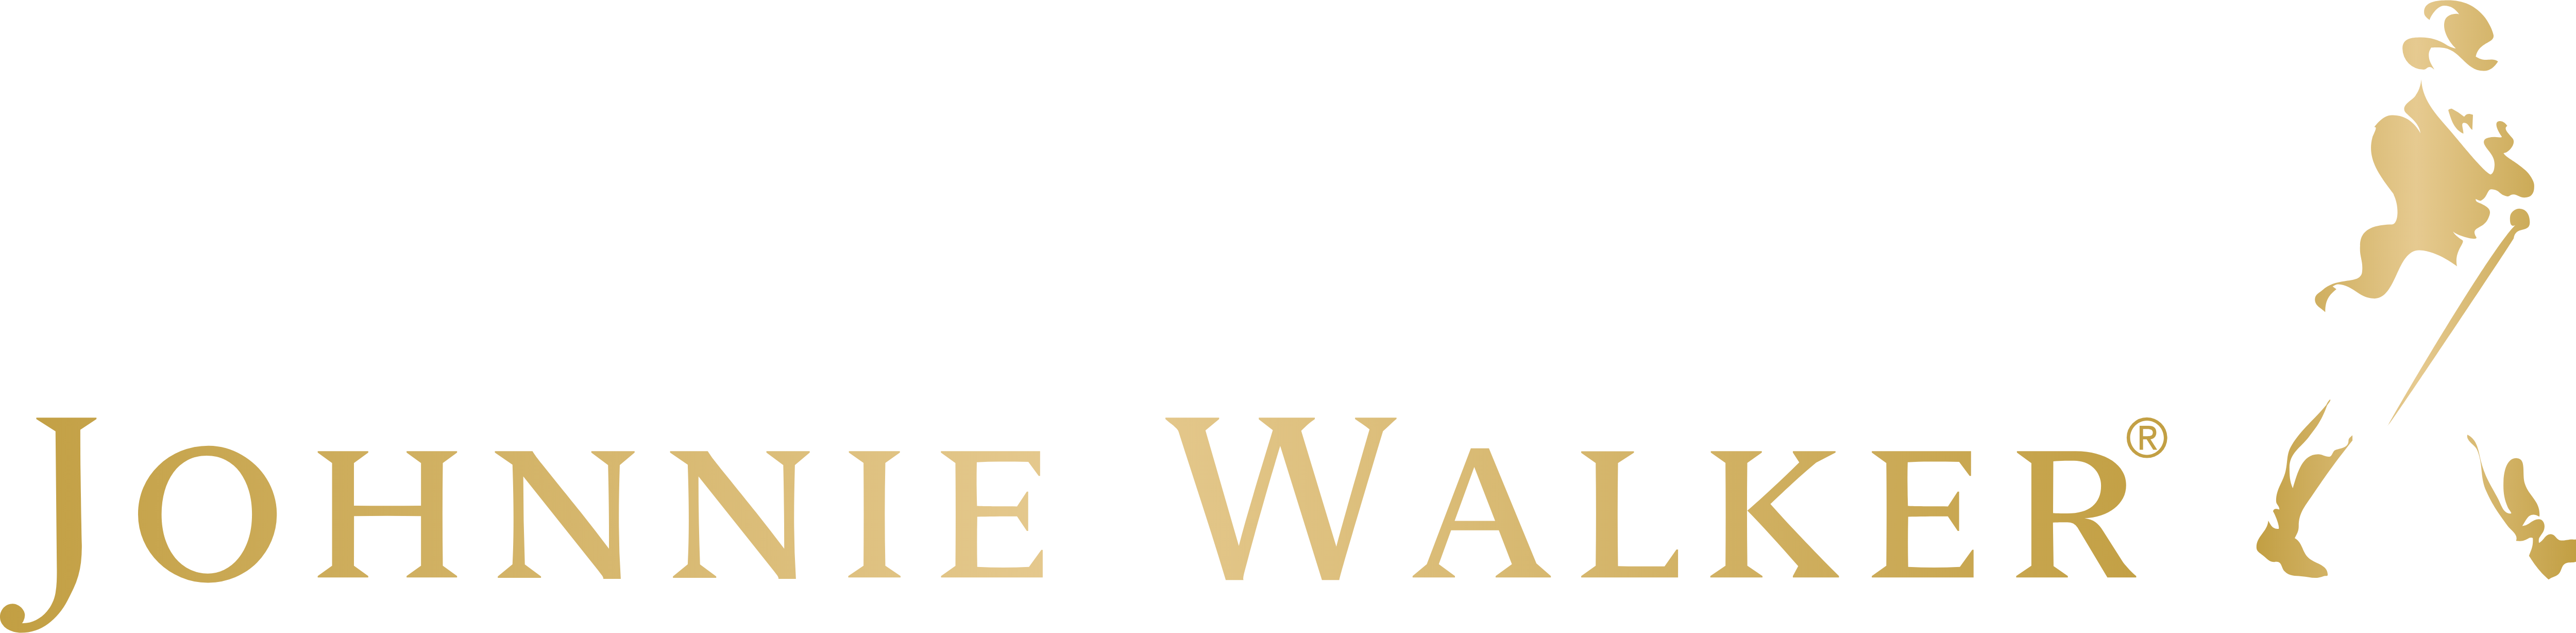 Johnnie Walker Brand Logo